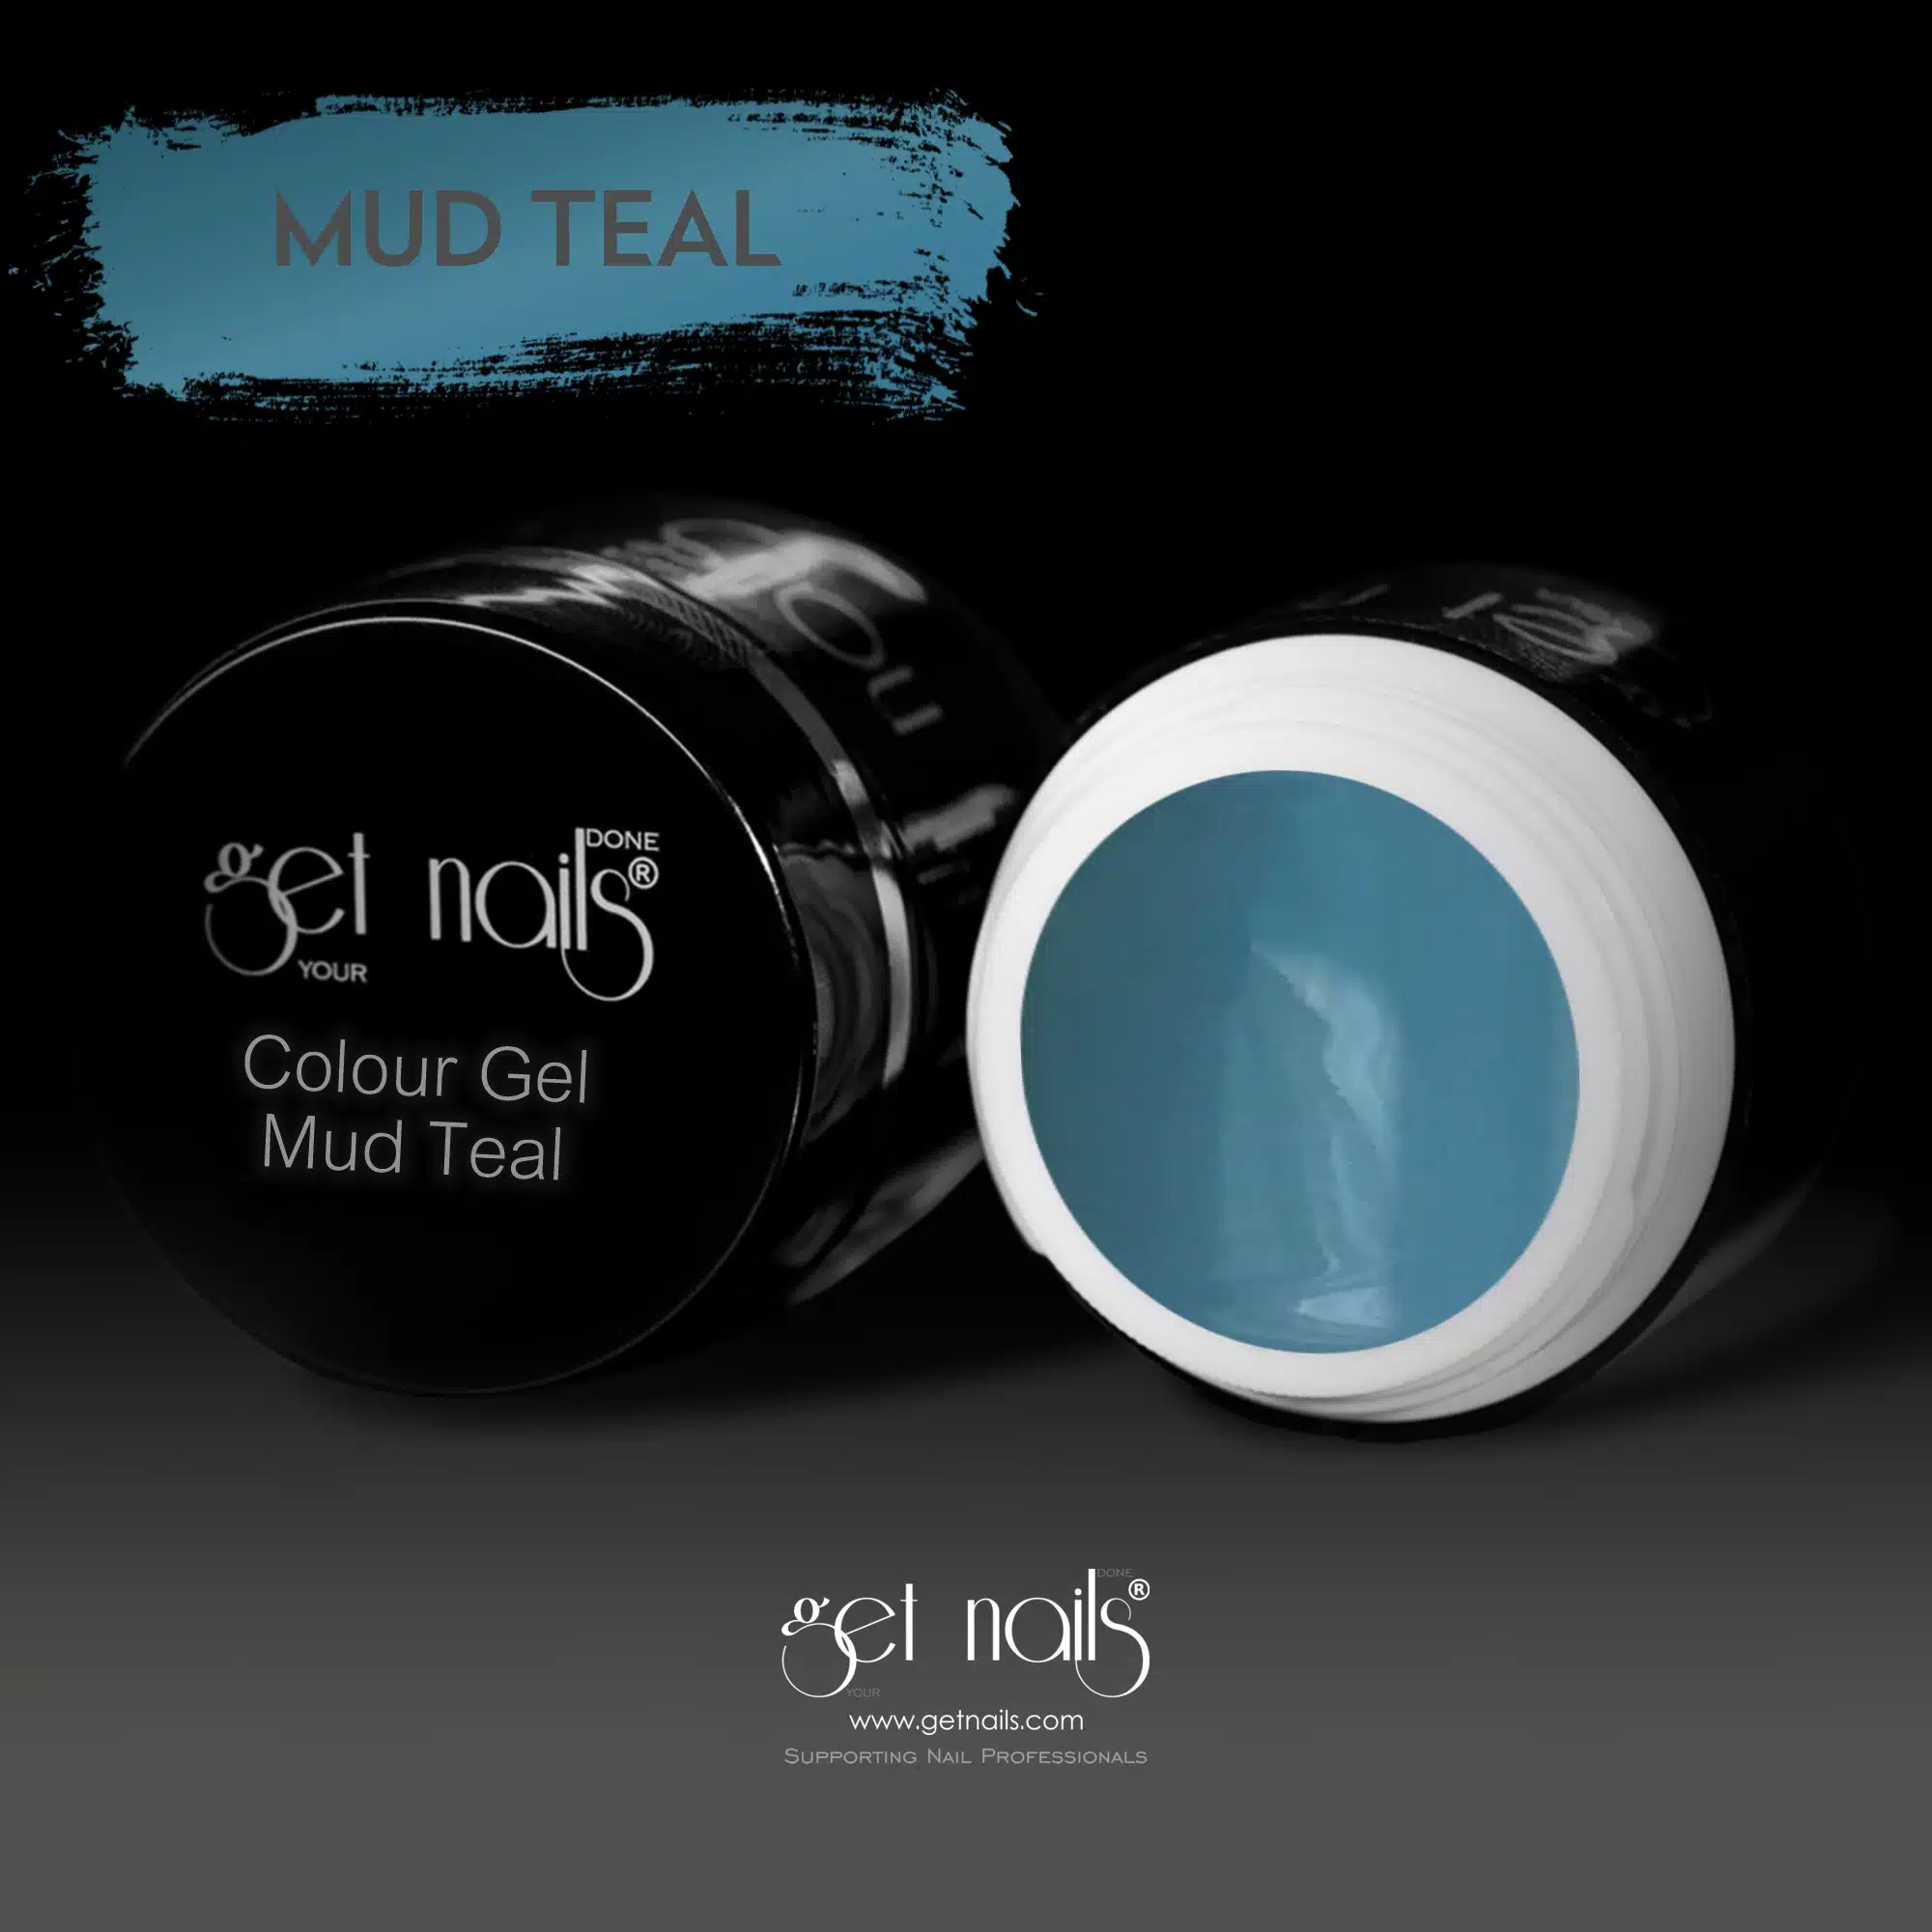 Get Nails Austria - Colour Gel Mud Teal 5g